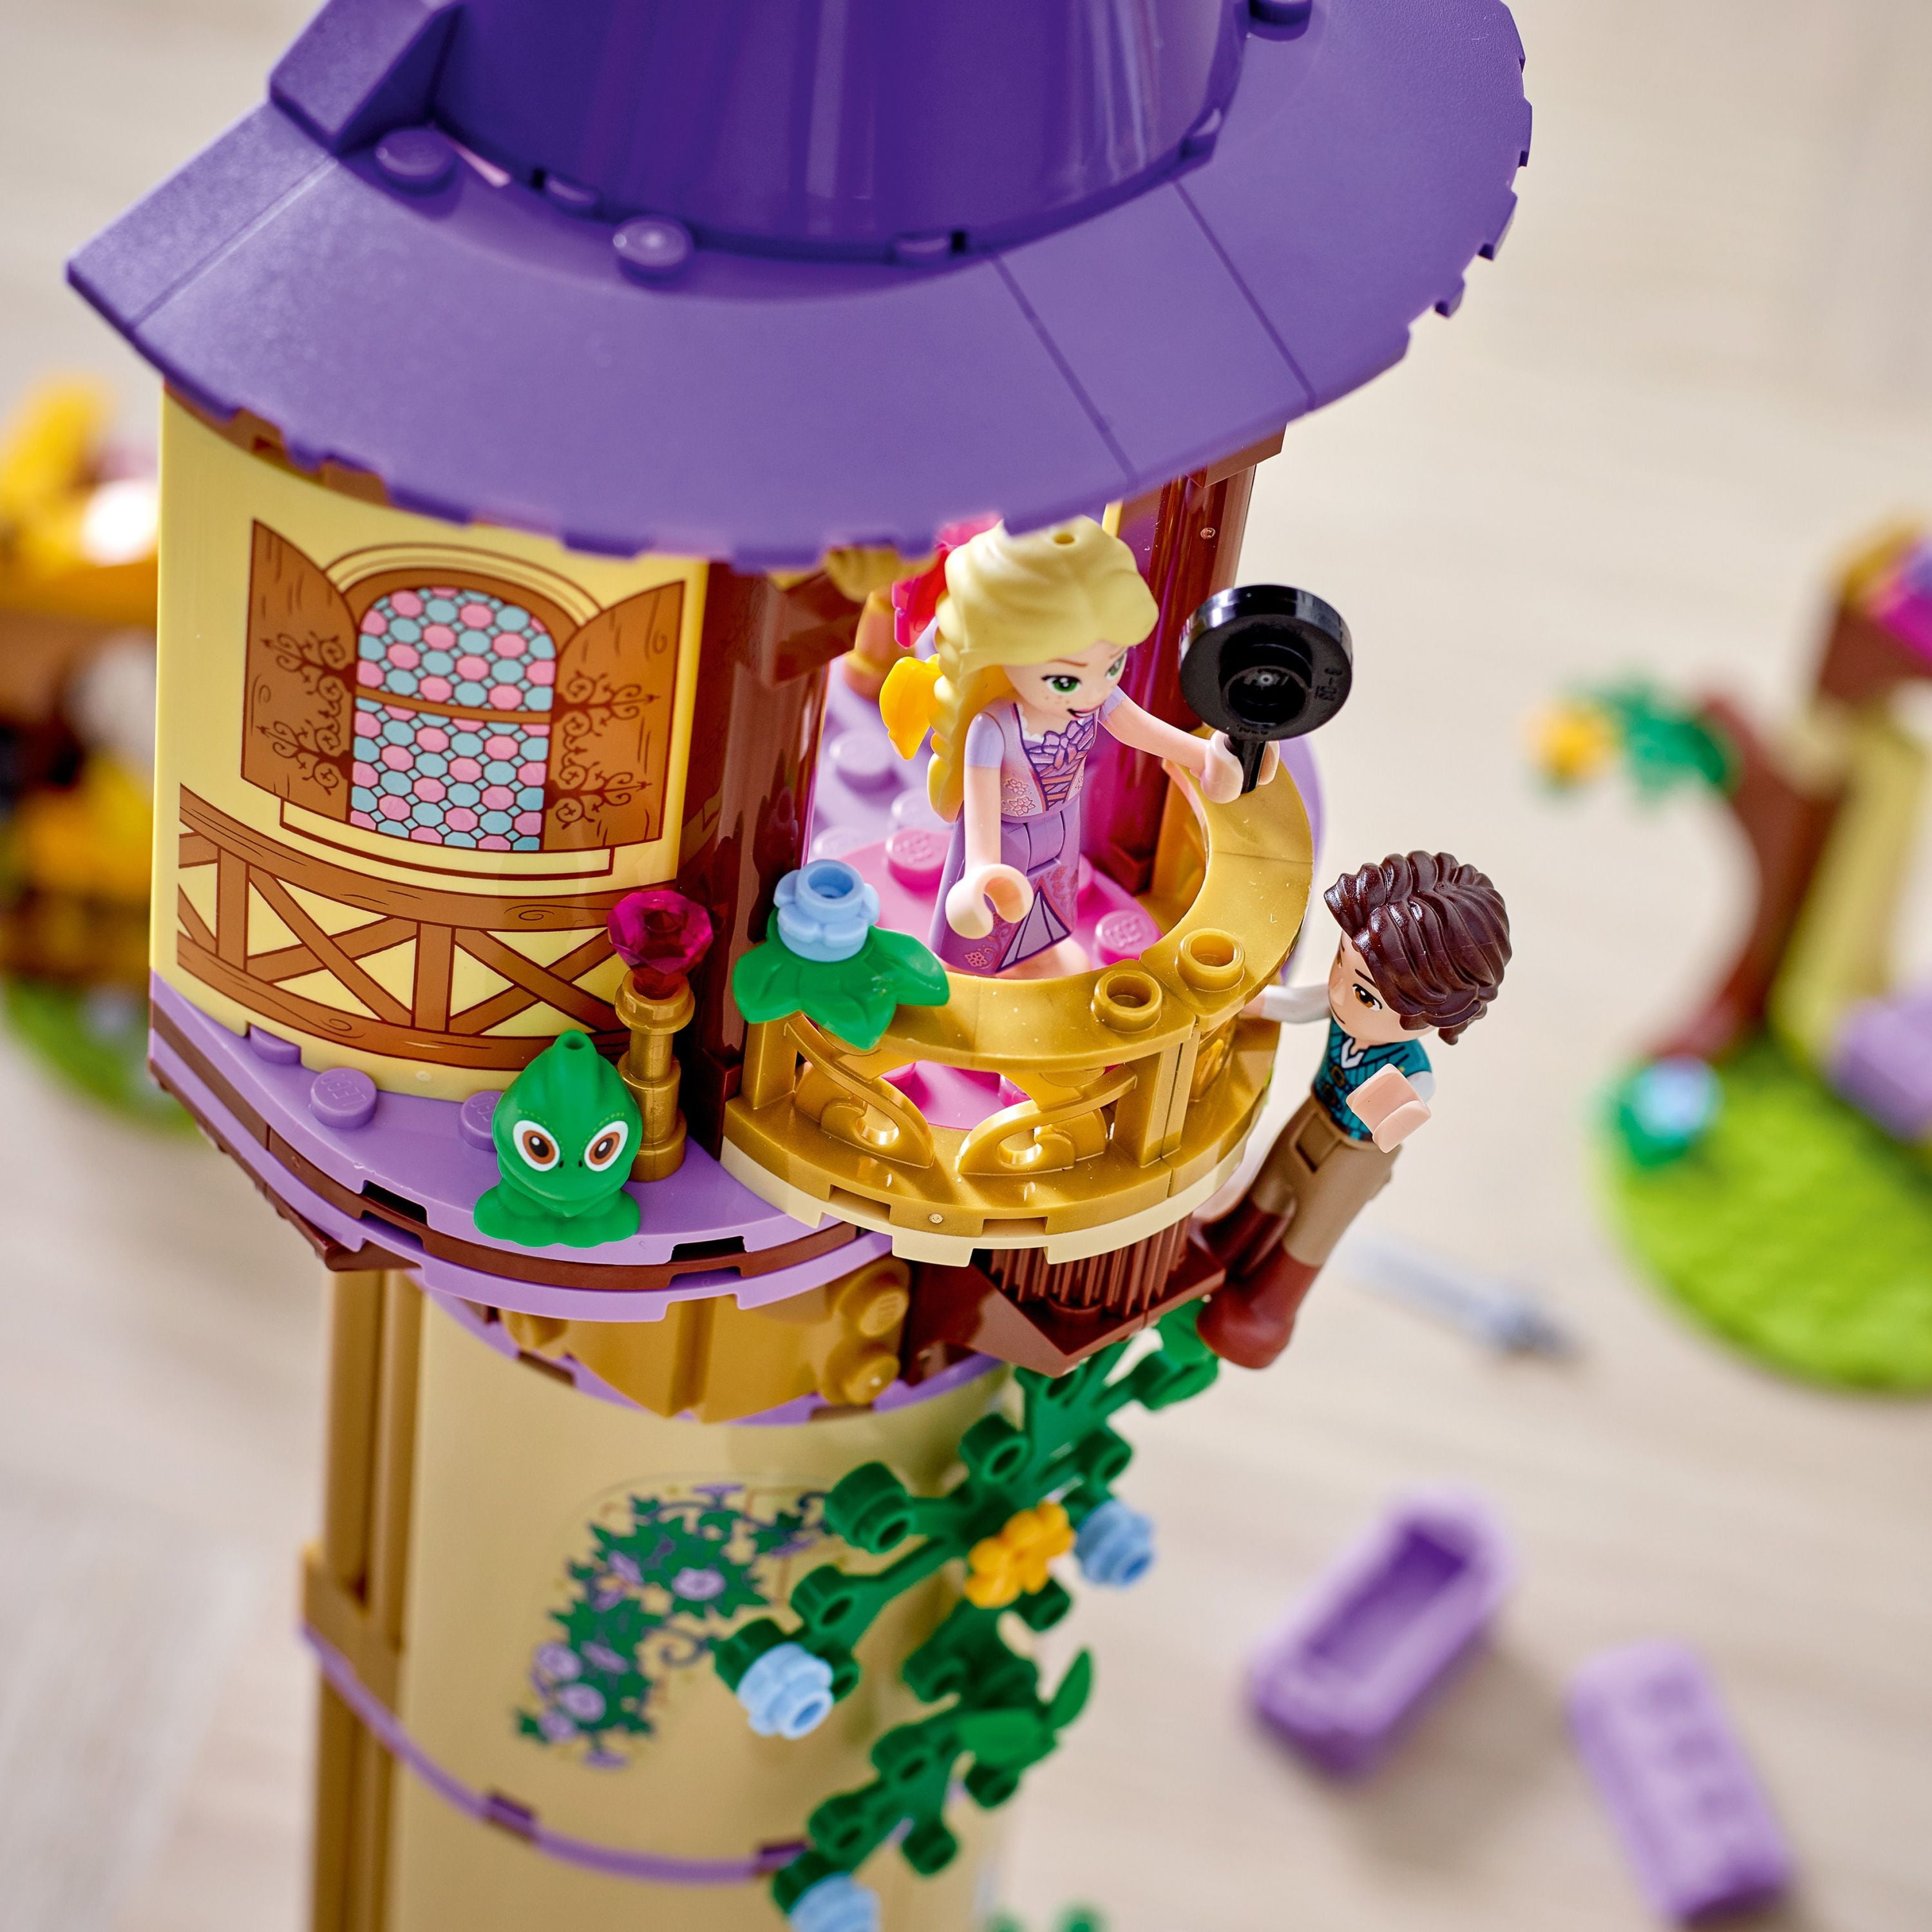 LEGO Disney Princess Rapunzel's Tower 43187 Building Set - Castle